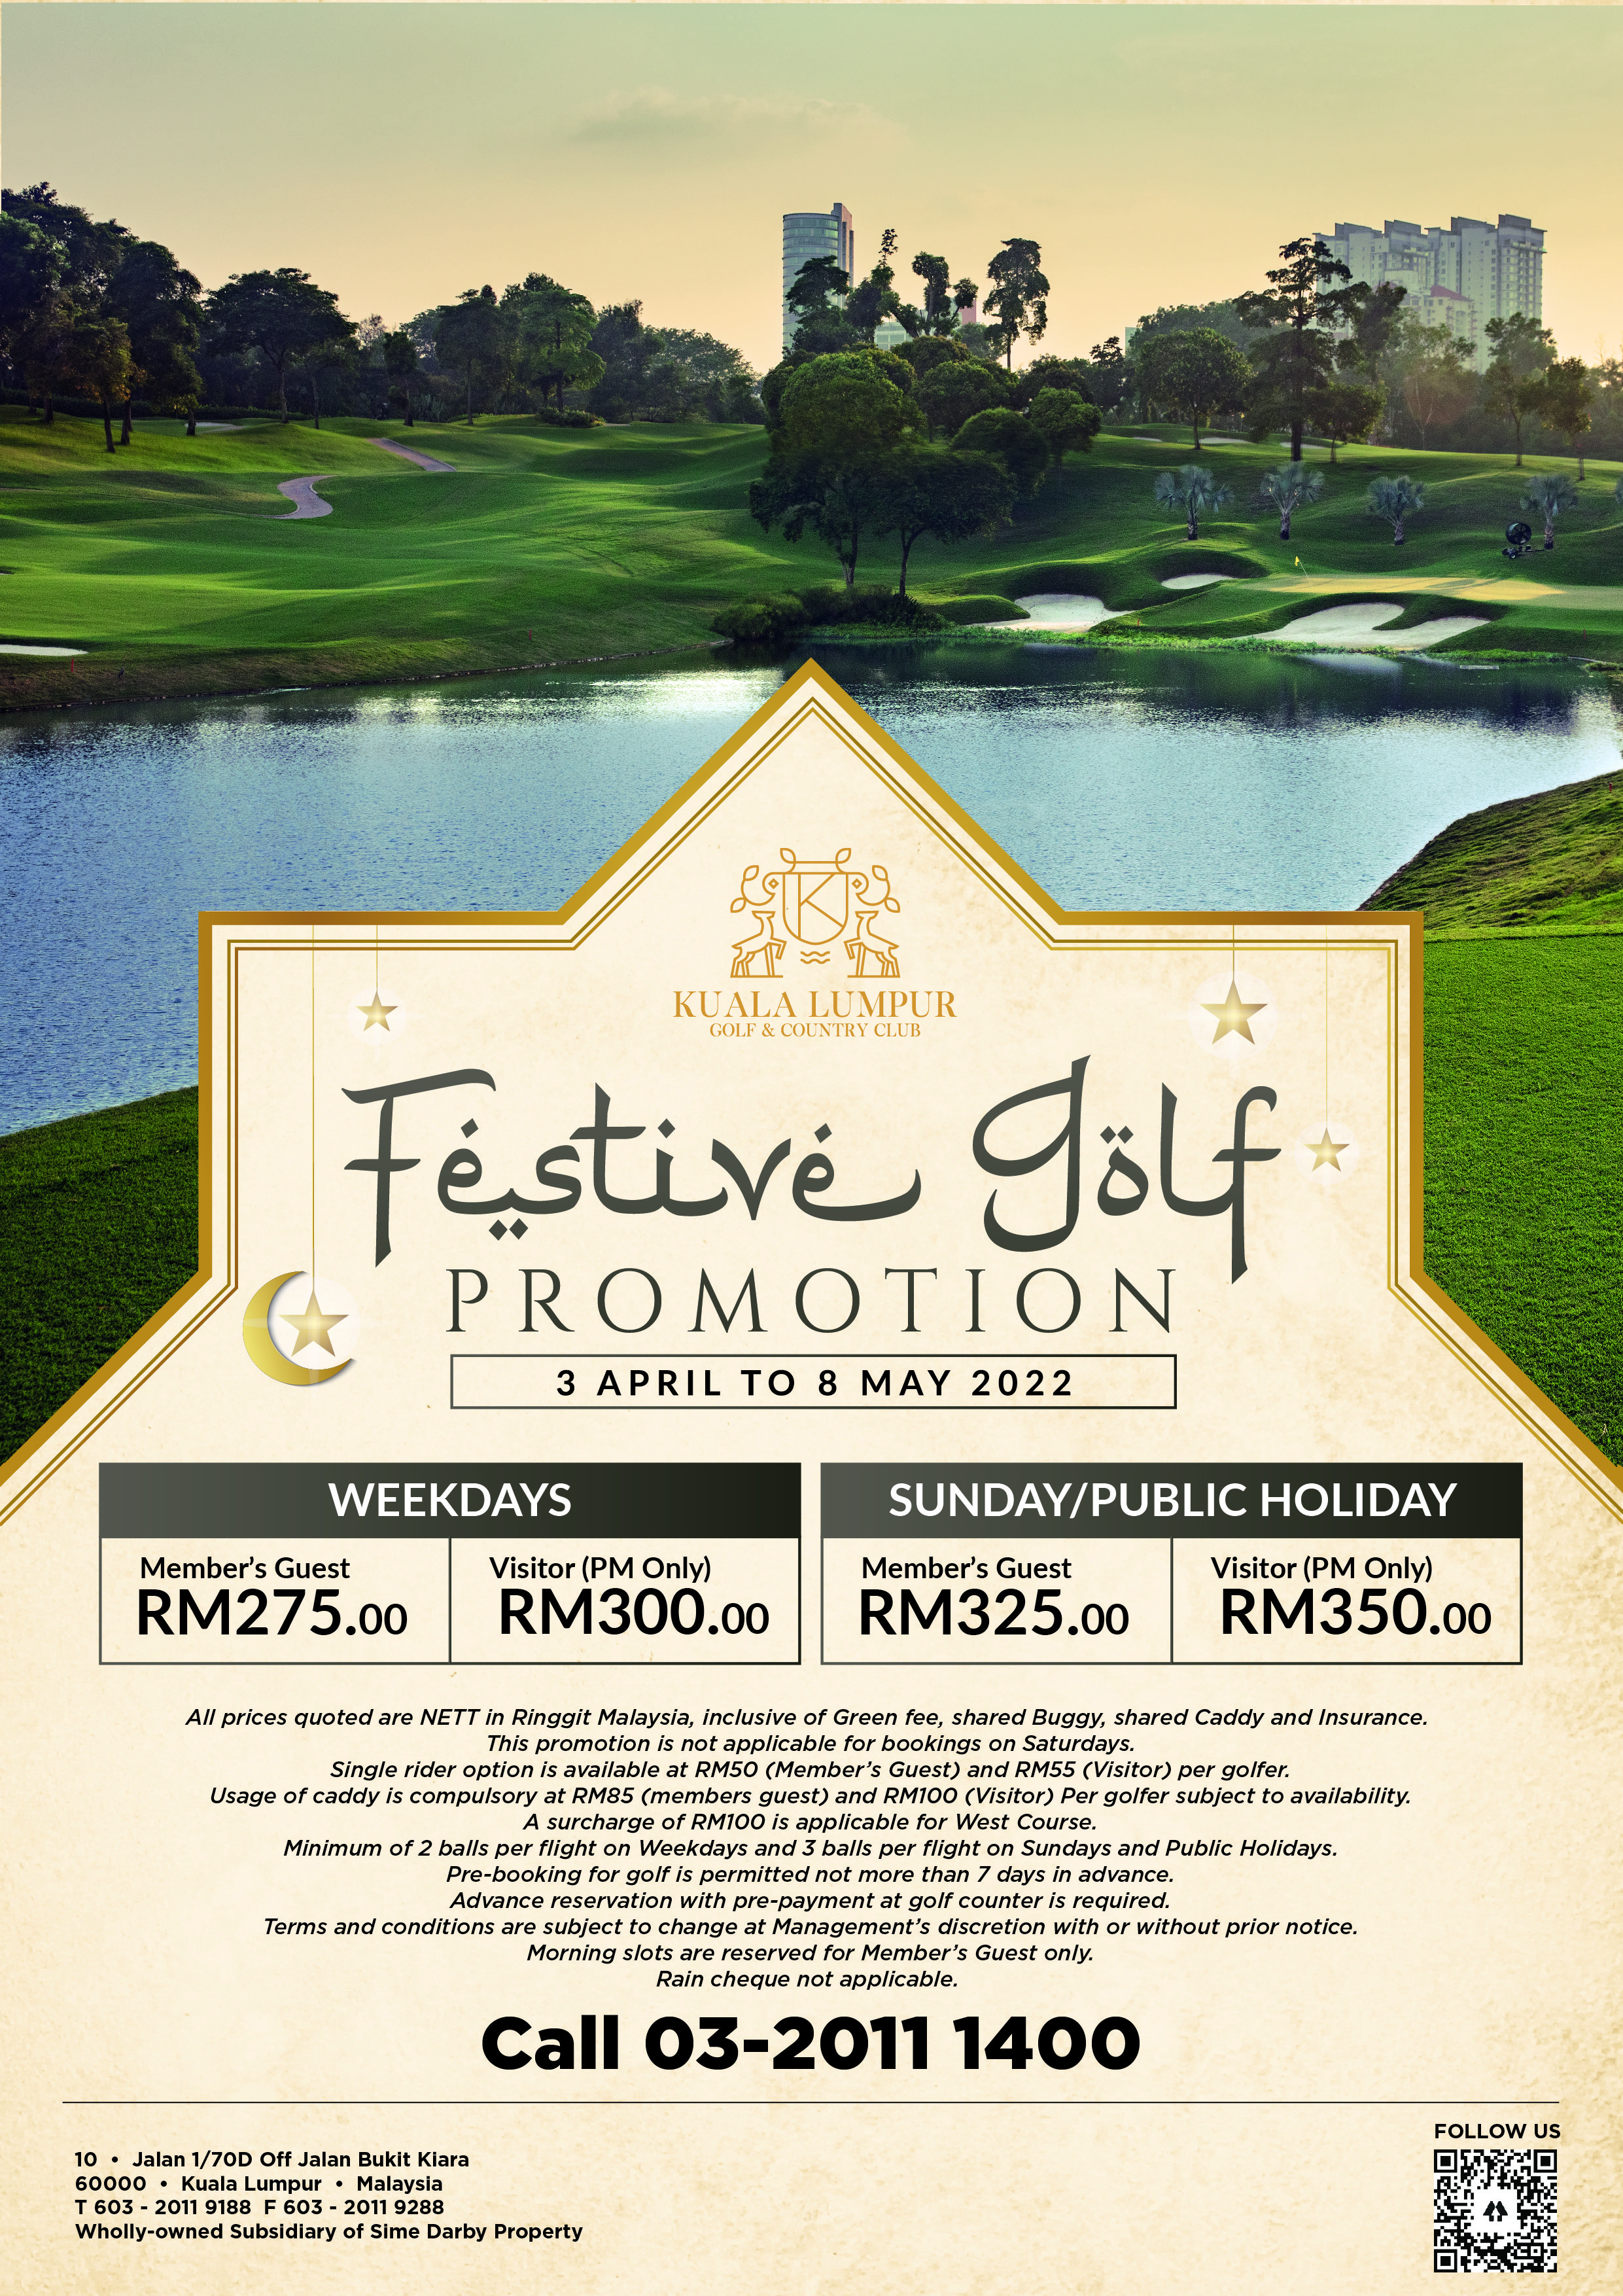 Festive Golf Promotion 